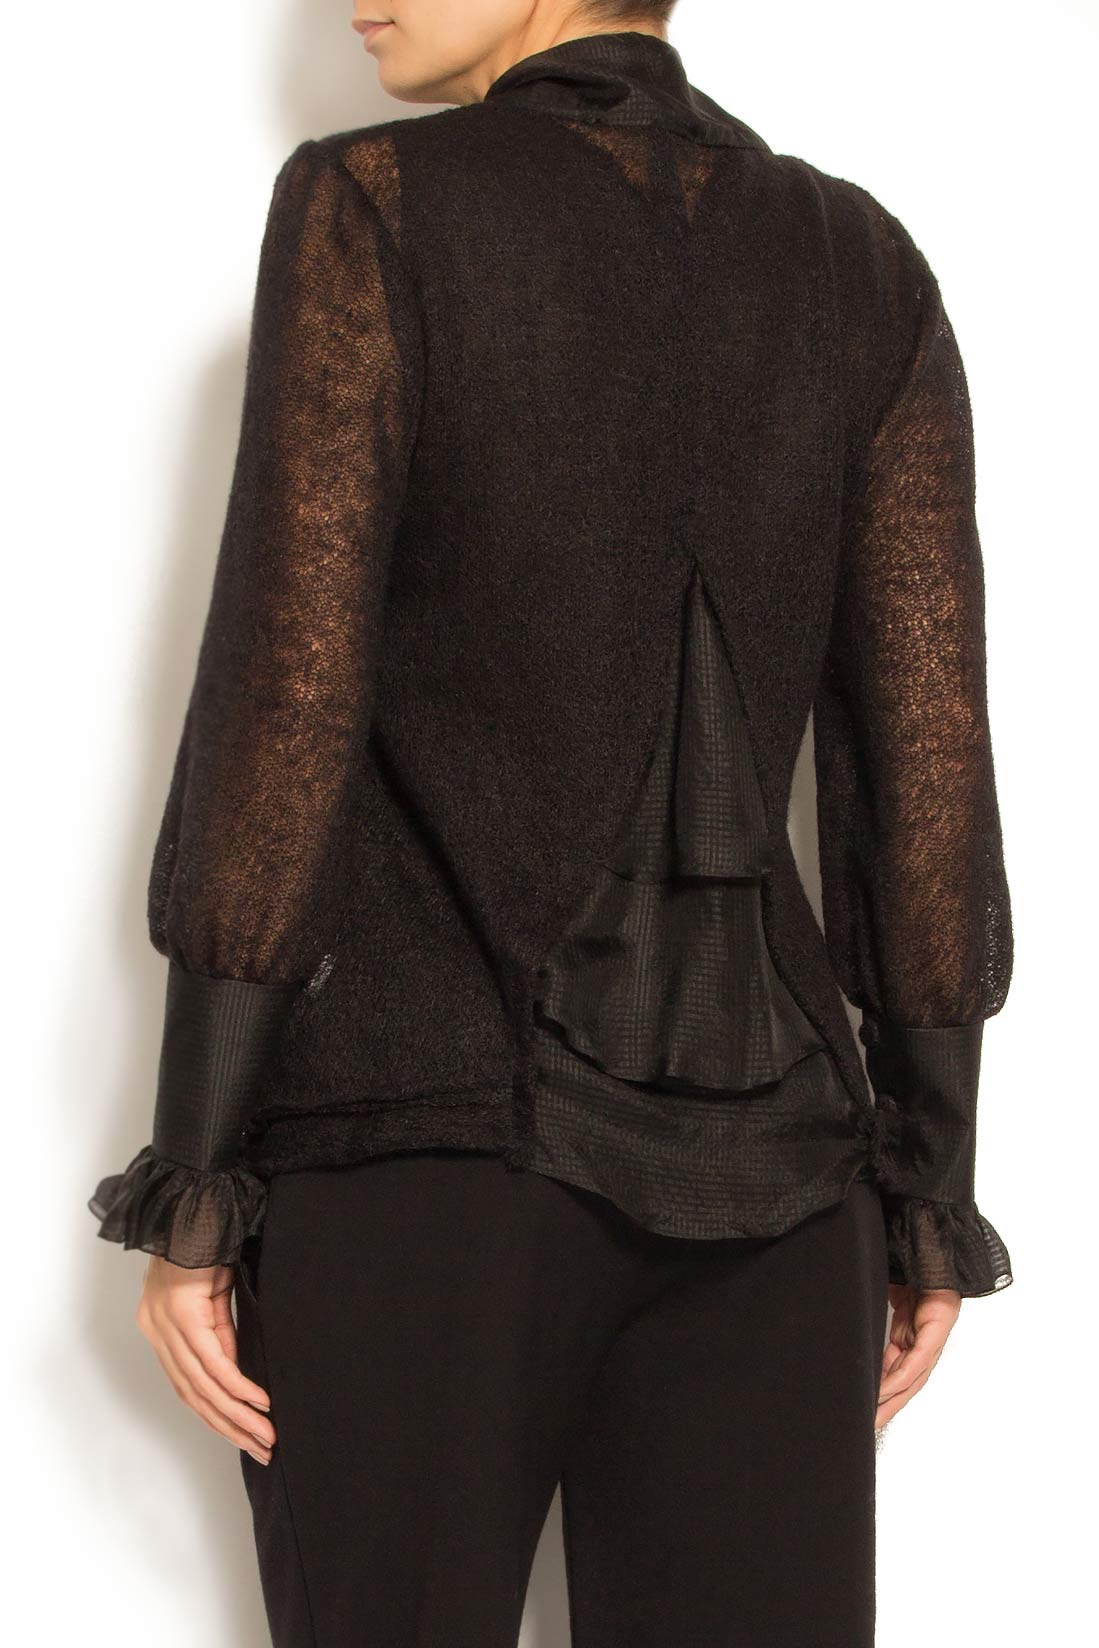 Silk-trimmed cashmere-blend sweater Elena Perseil image 2